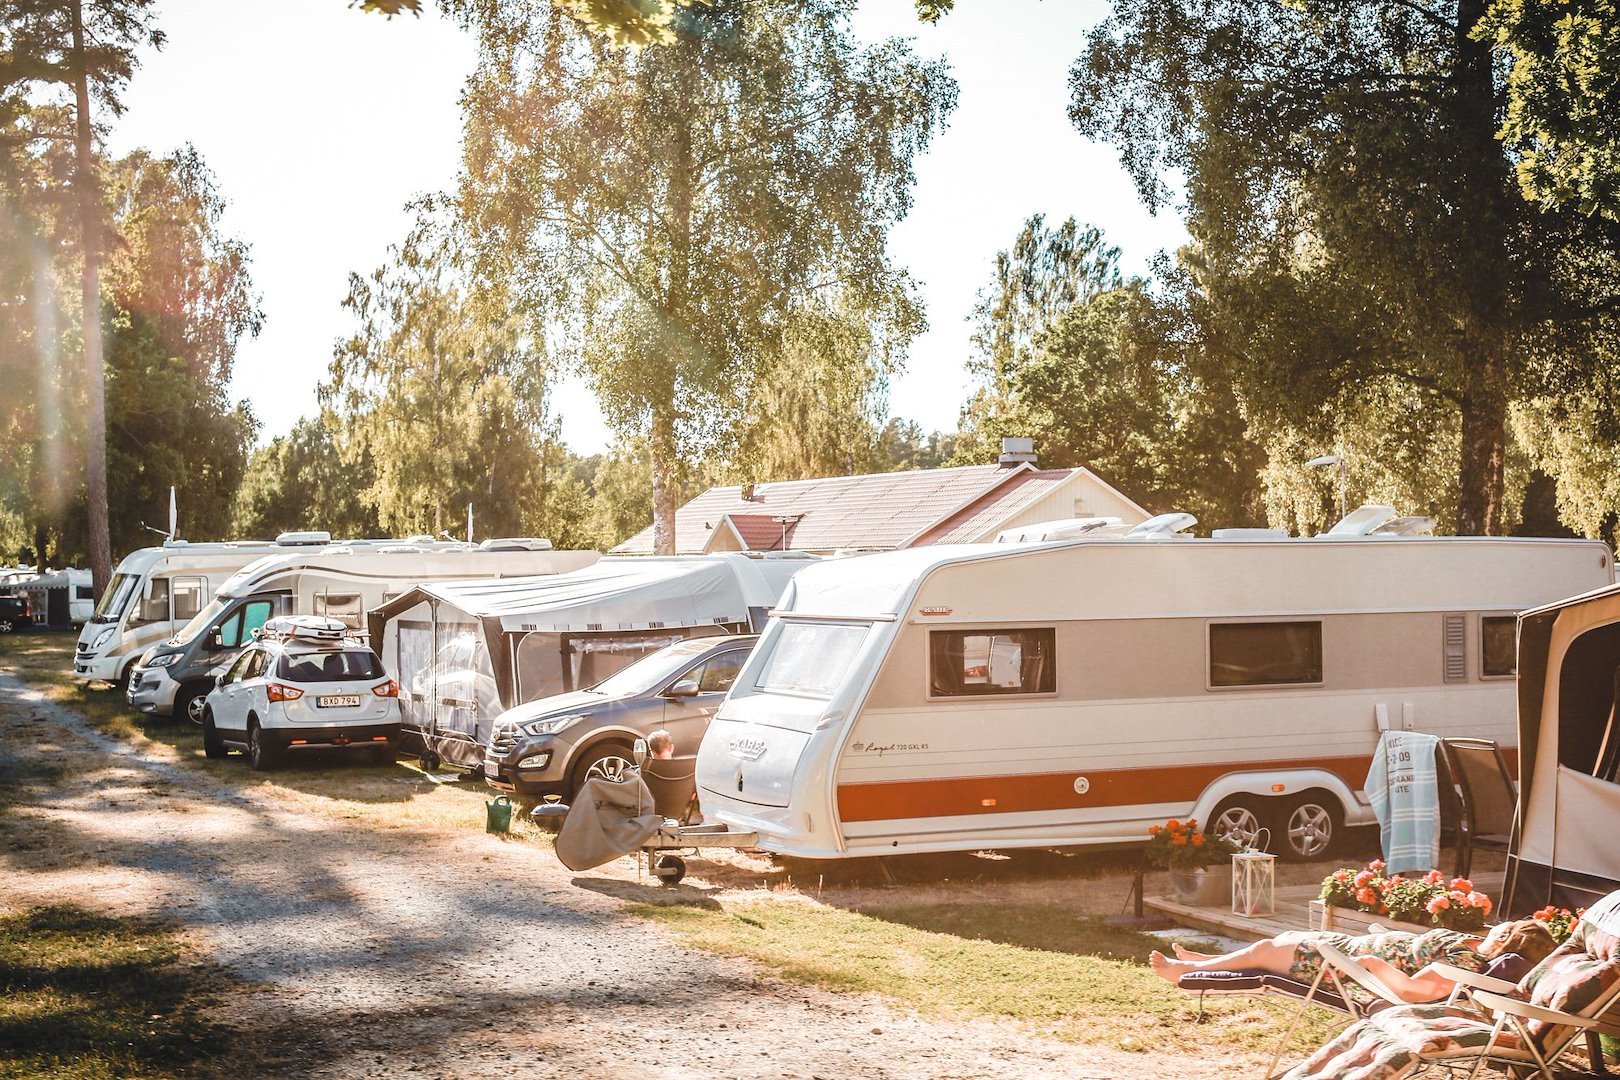 Piazzola per campeggio caravan/casa mobile/tenda con elettricità 80-100 mq